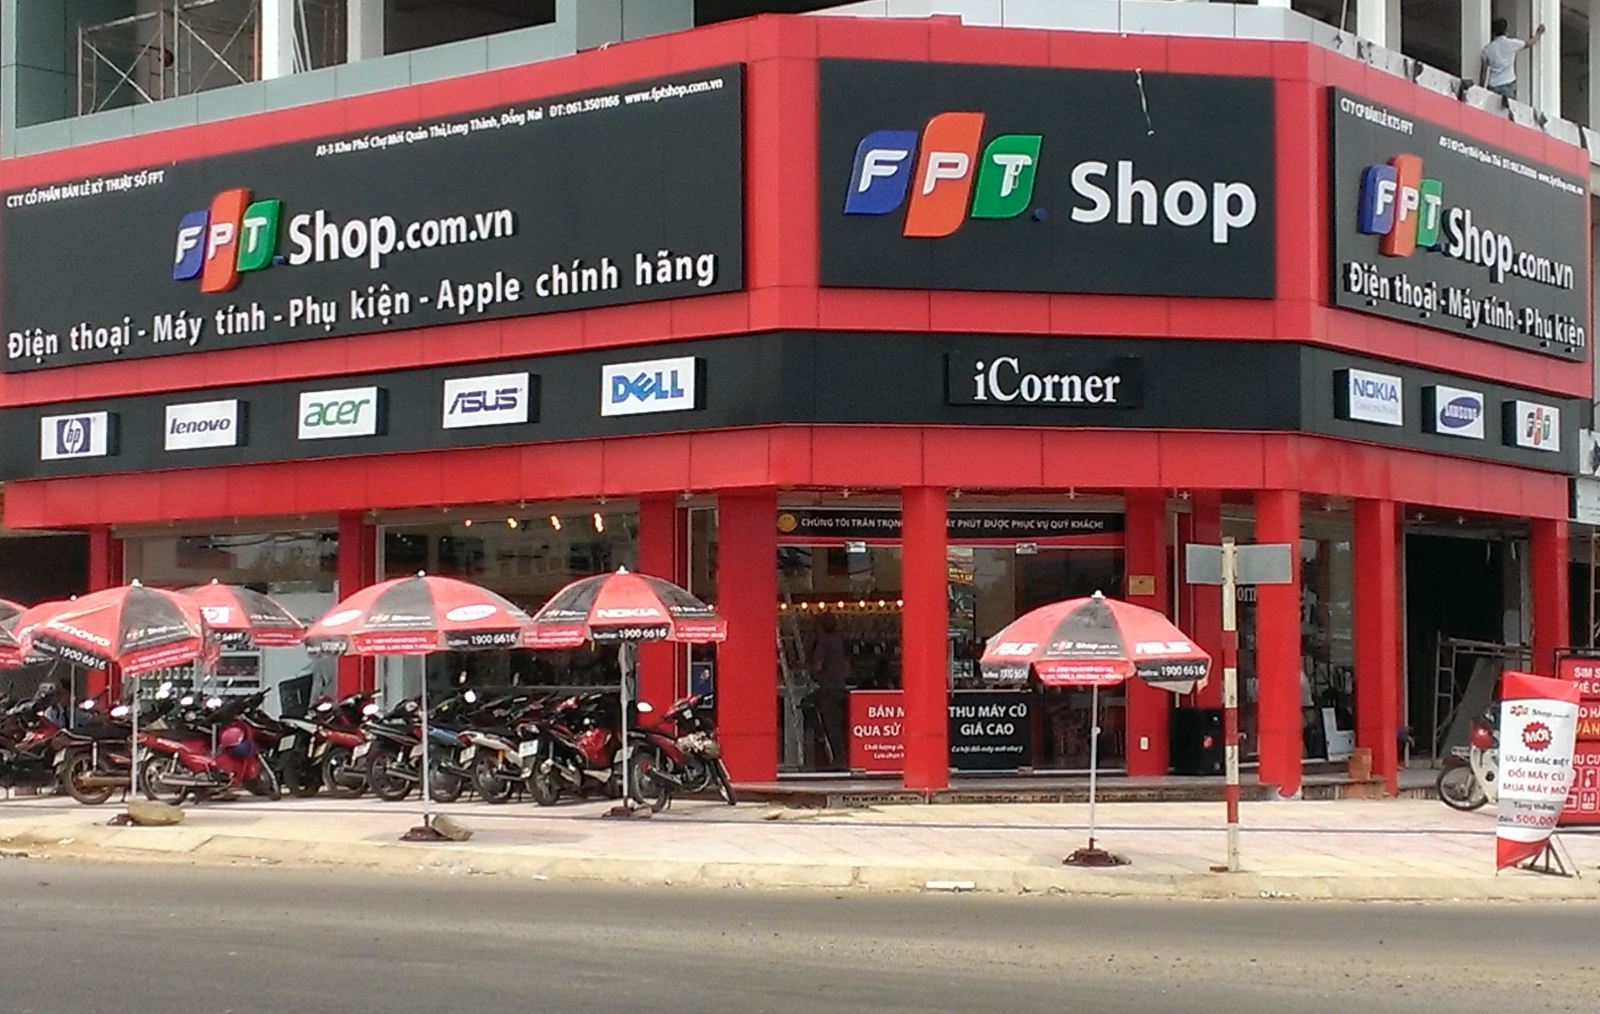 FPT Shop là một cửa hàng điện thoại uy tín